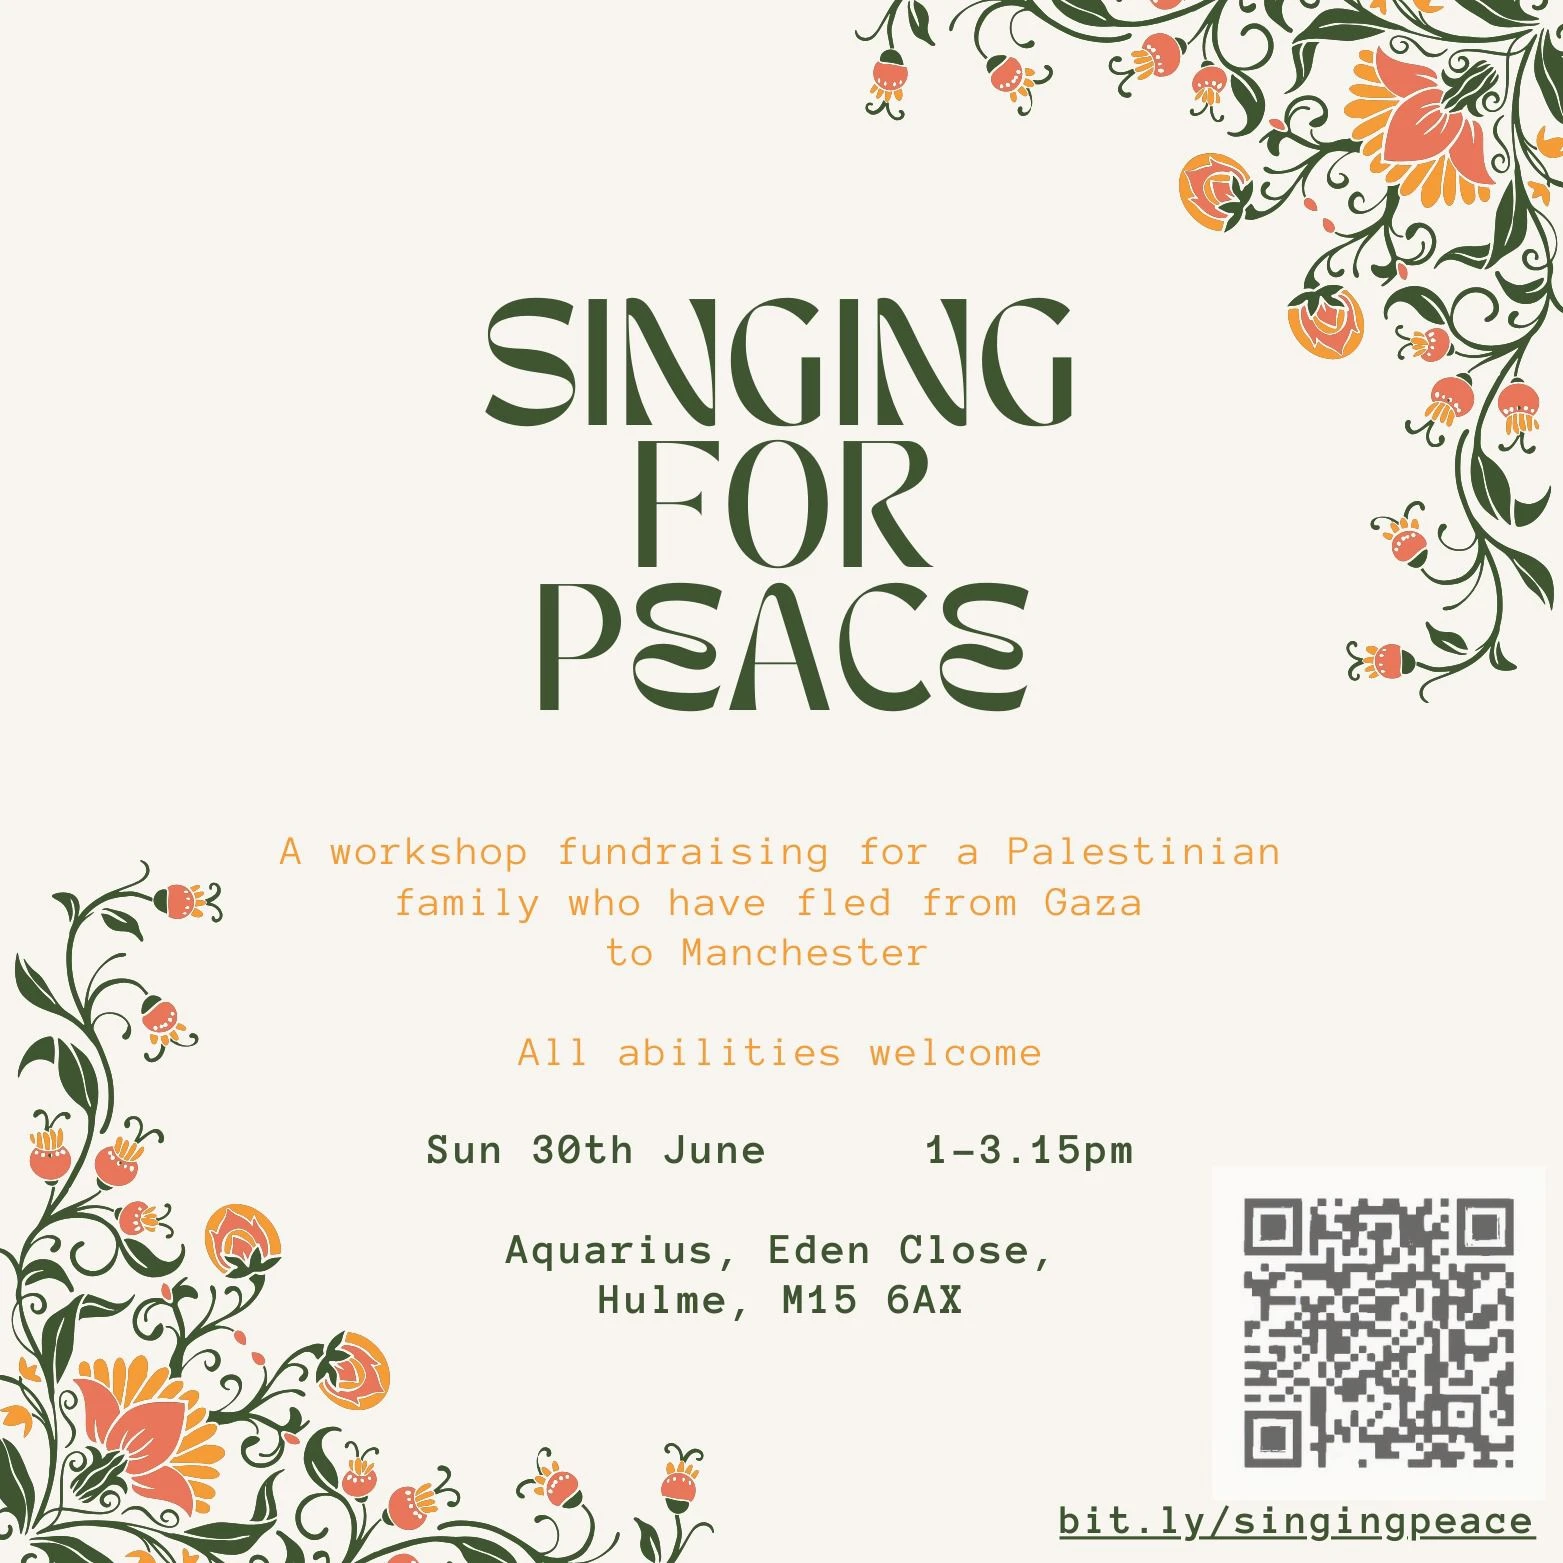 ورشة خيرية في فن الغناء من أجل عائلة فلسطينية